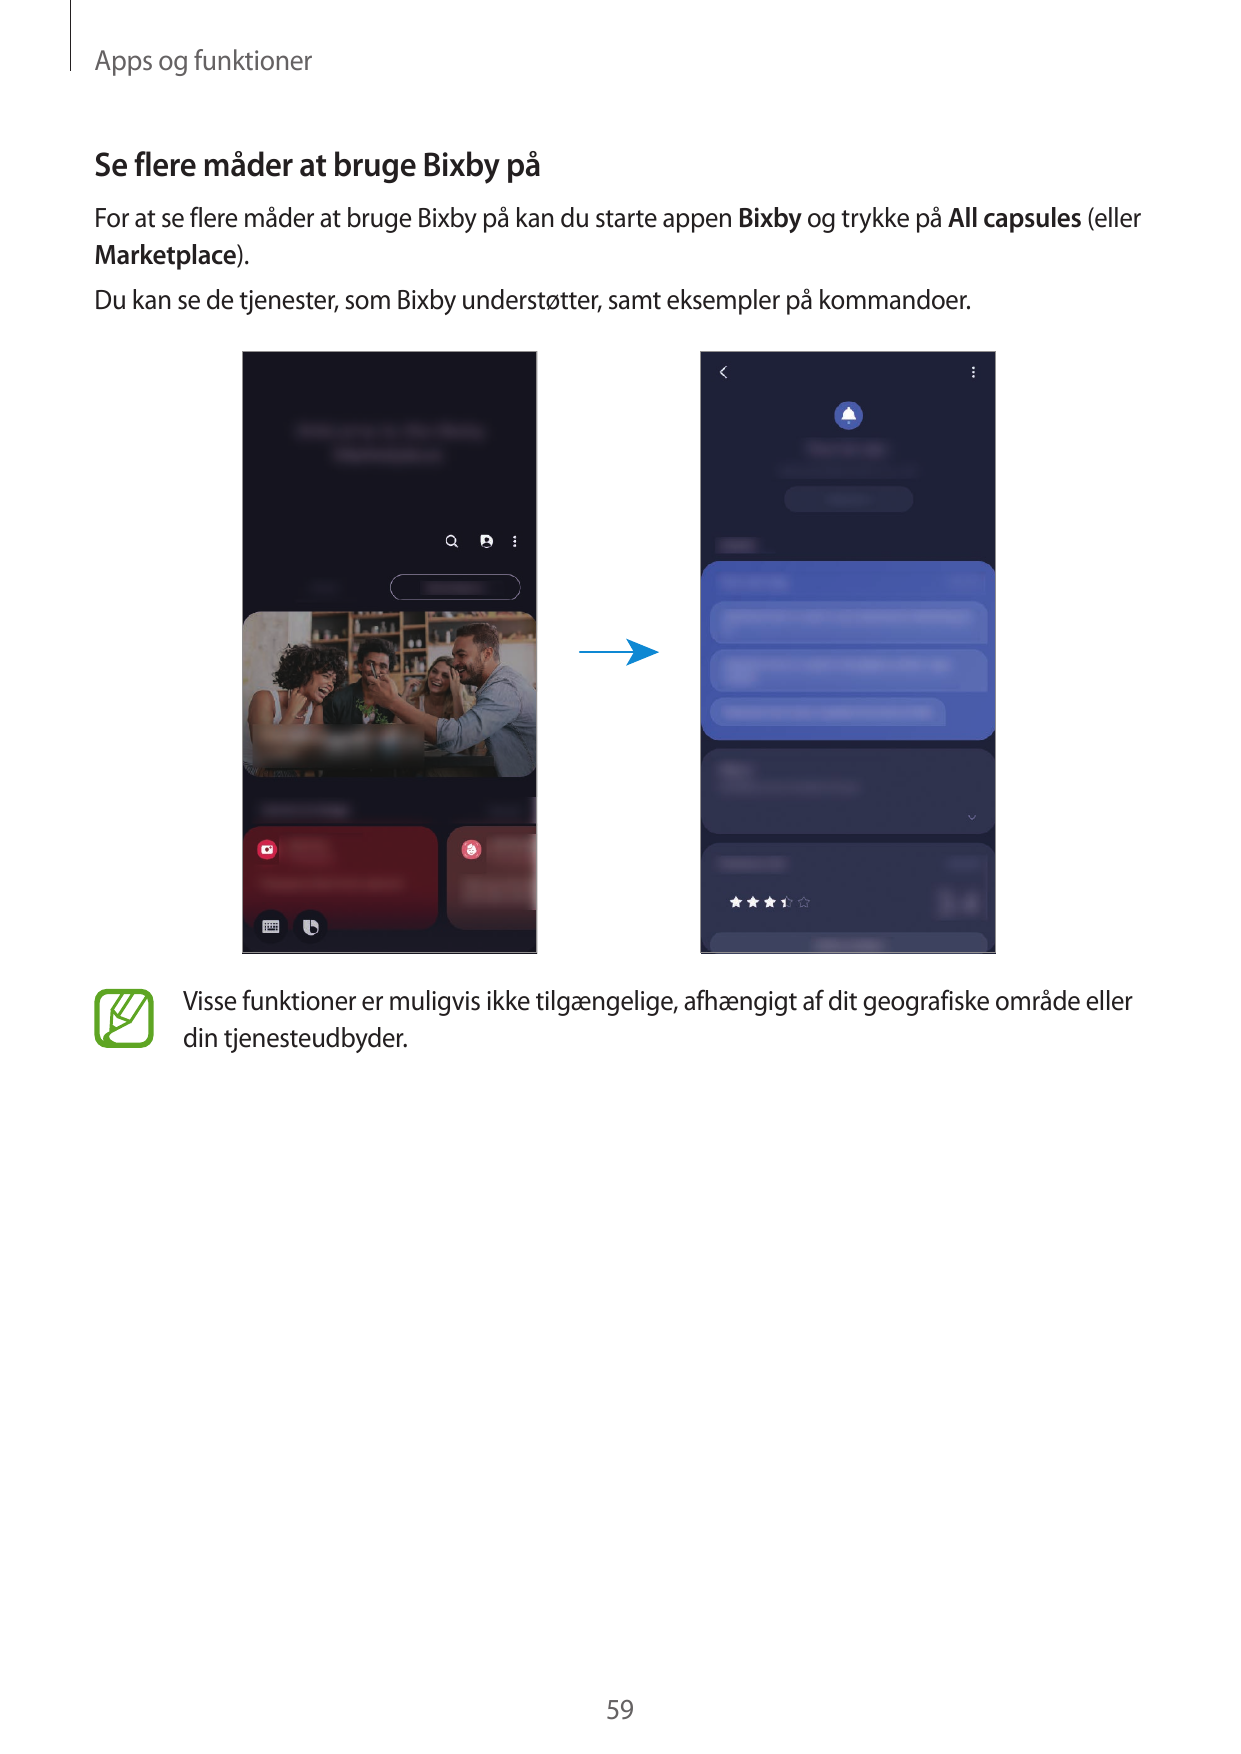 Apps og funktionerSe flere måder at bruge Bixby påFor at se flere måder at bruge Bixby på kan du starte appen Bixby og trykke på